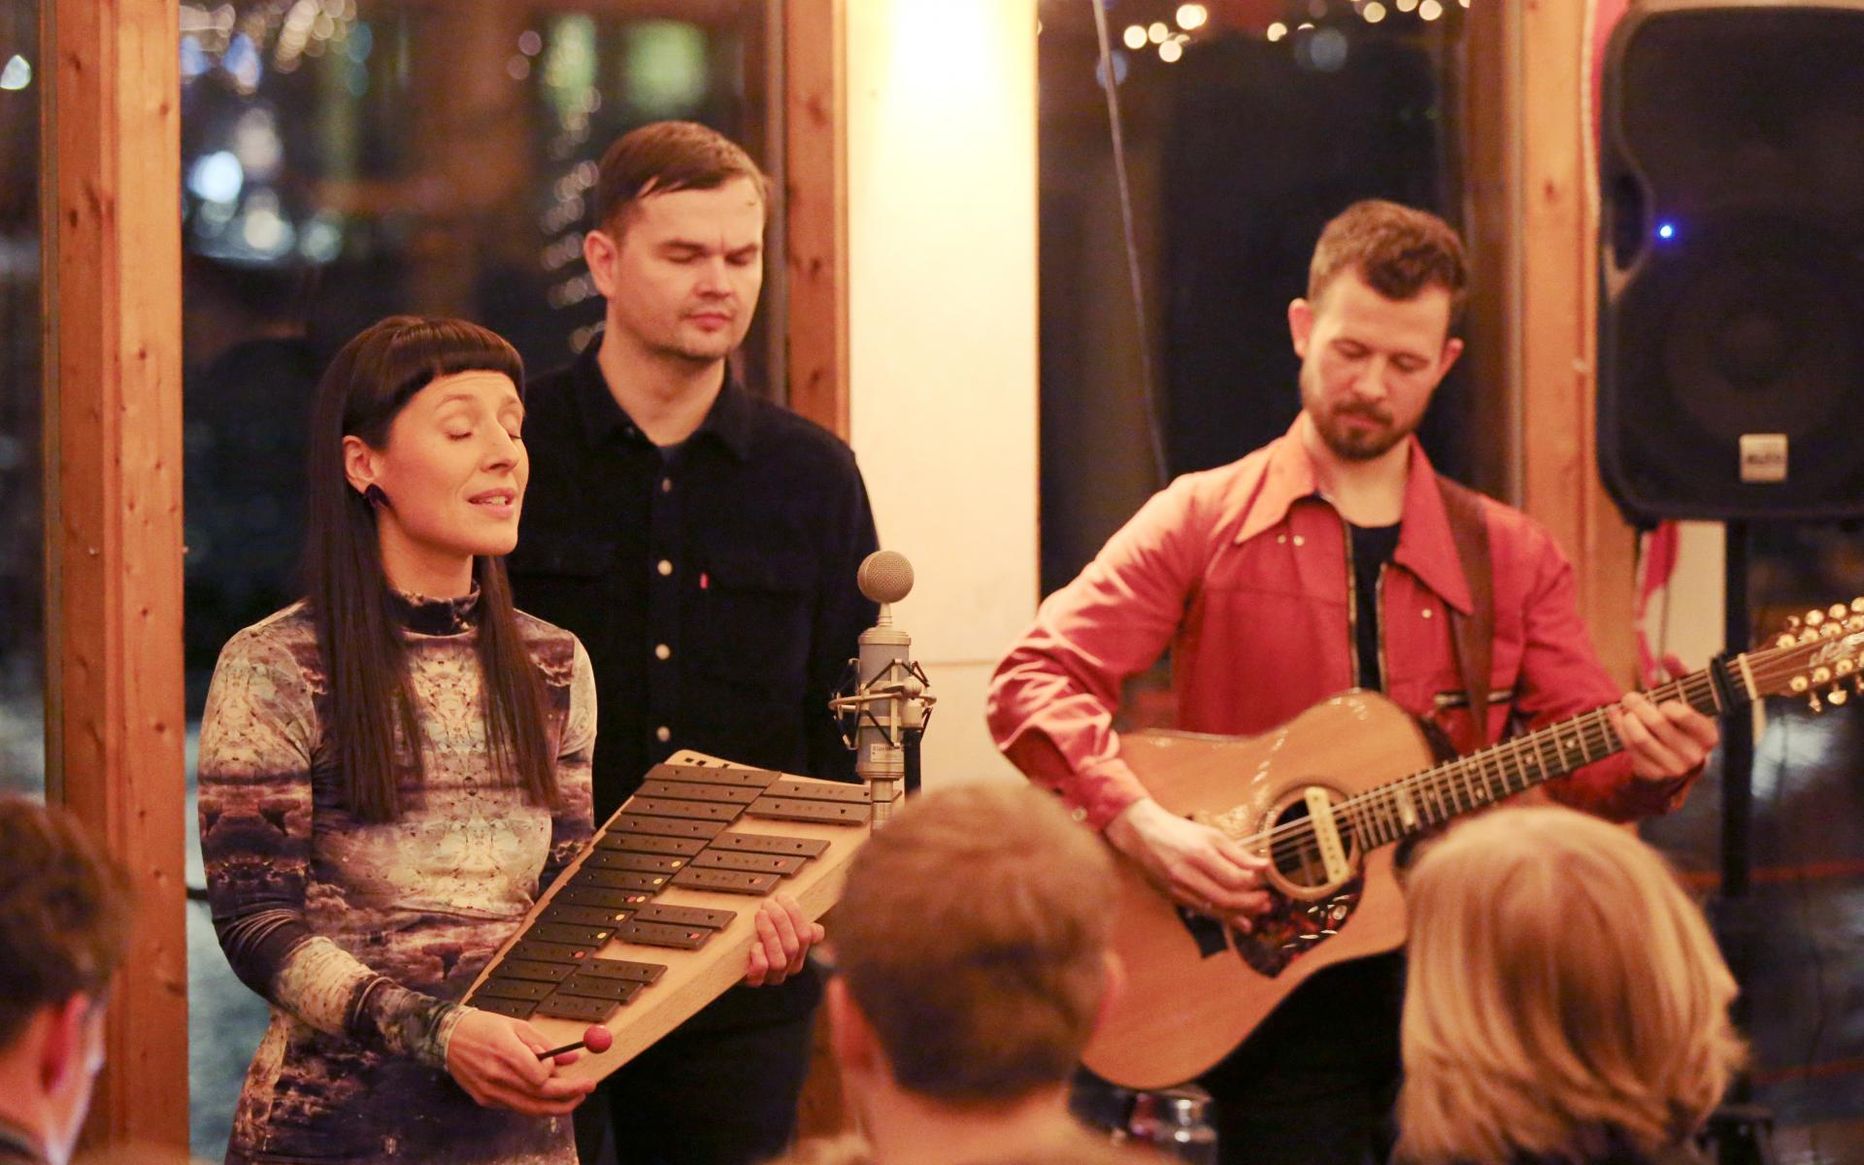 Uus loos laulab Sandra Vabarna koos Vaiko Eplikuga (keskel), neid saadavad Jalmar Vabarna (paremal) ja Tõnu Tubli.